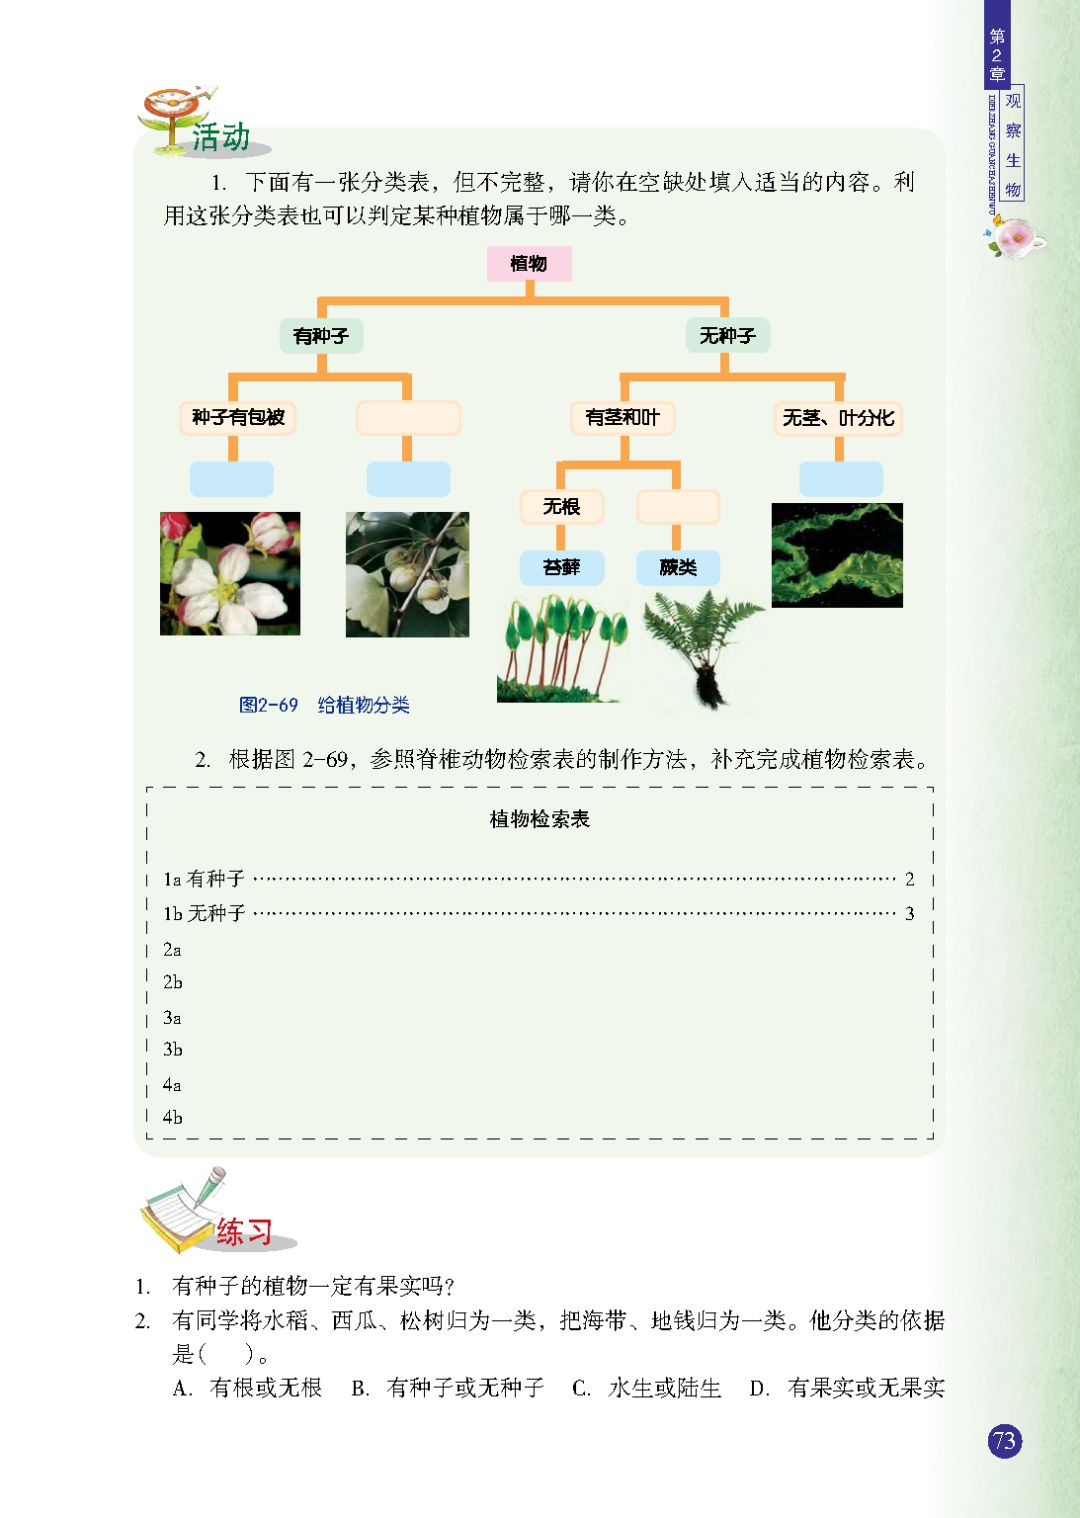 植物分类 Page73 浙教版七年级科学上册电子课本 教材 教科书 好多电子课本网